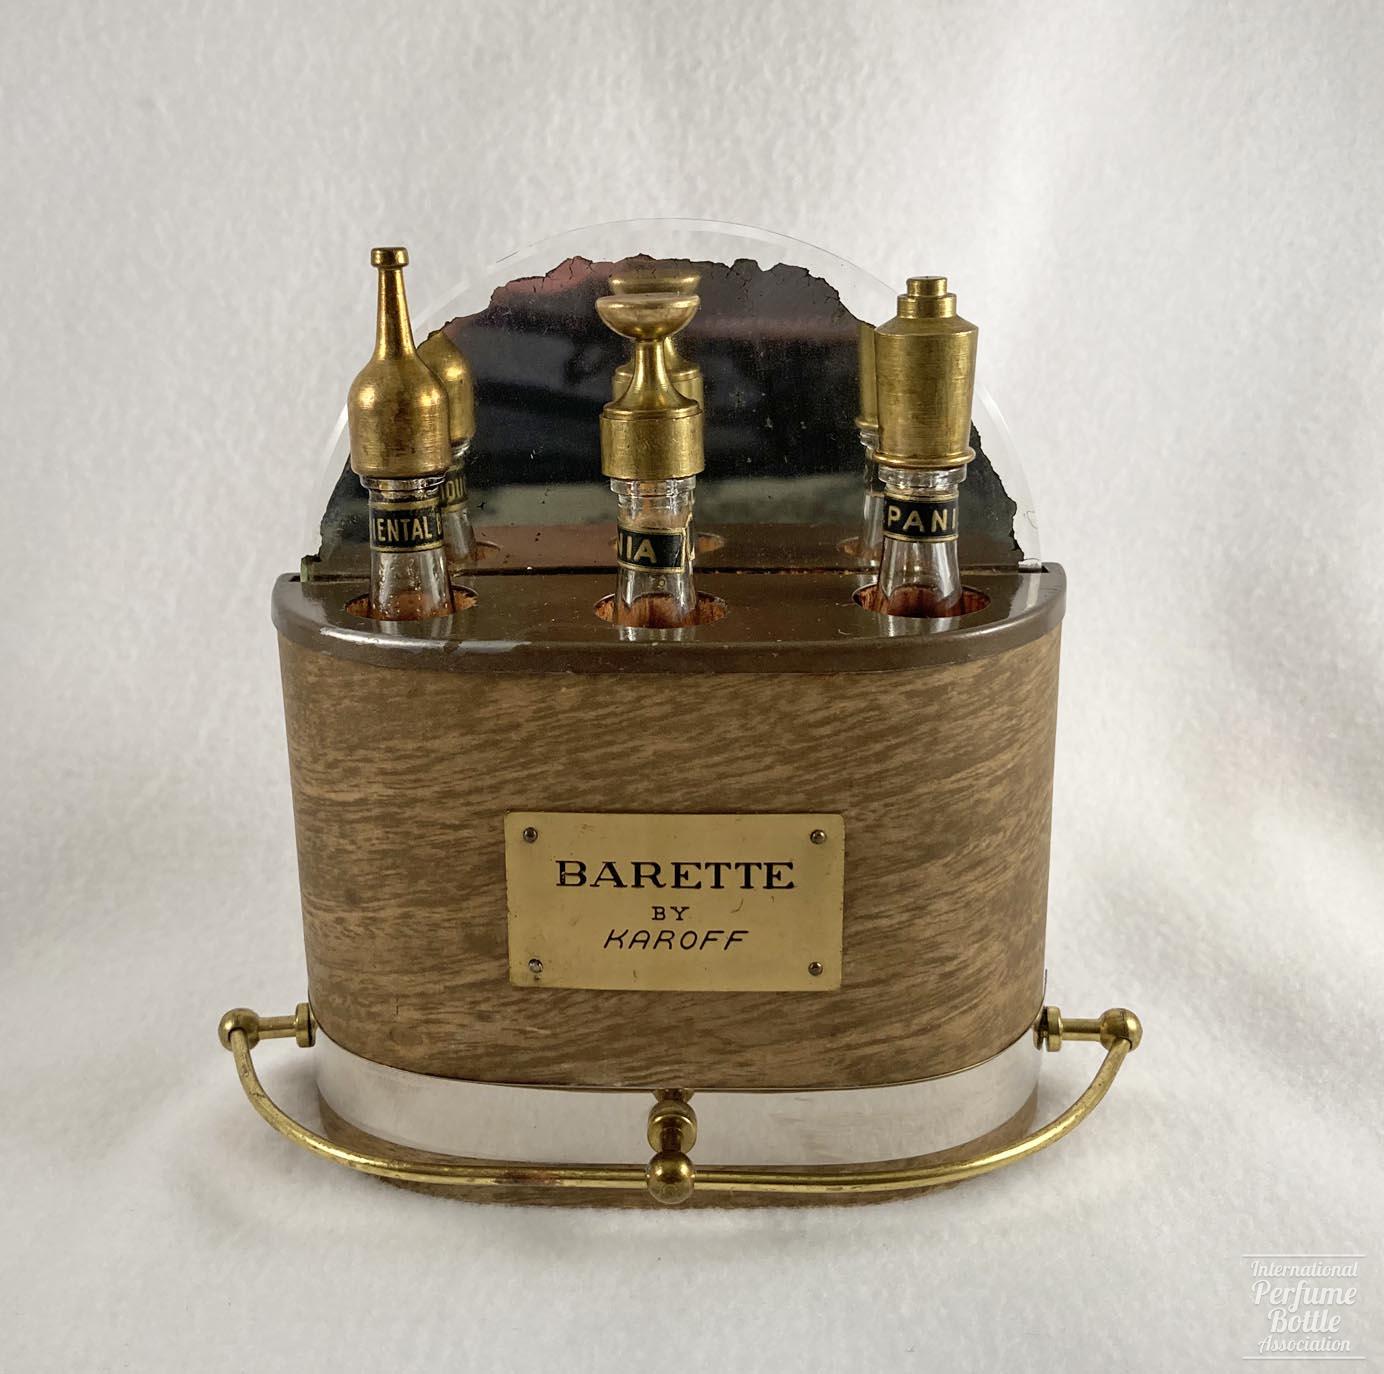 "Barette" by Karoff